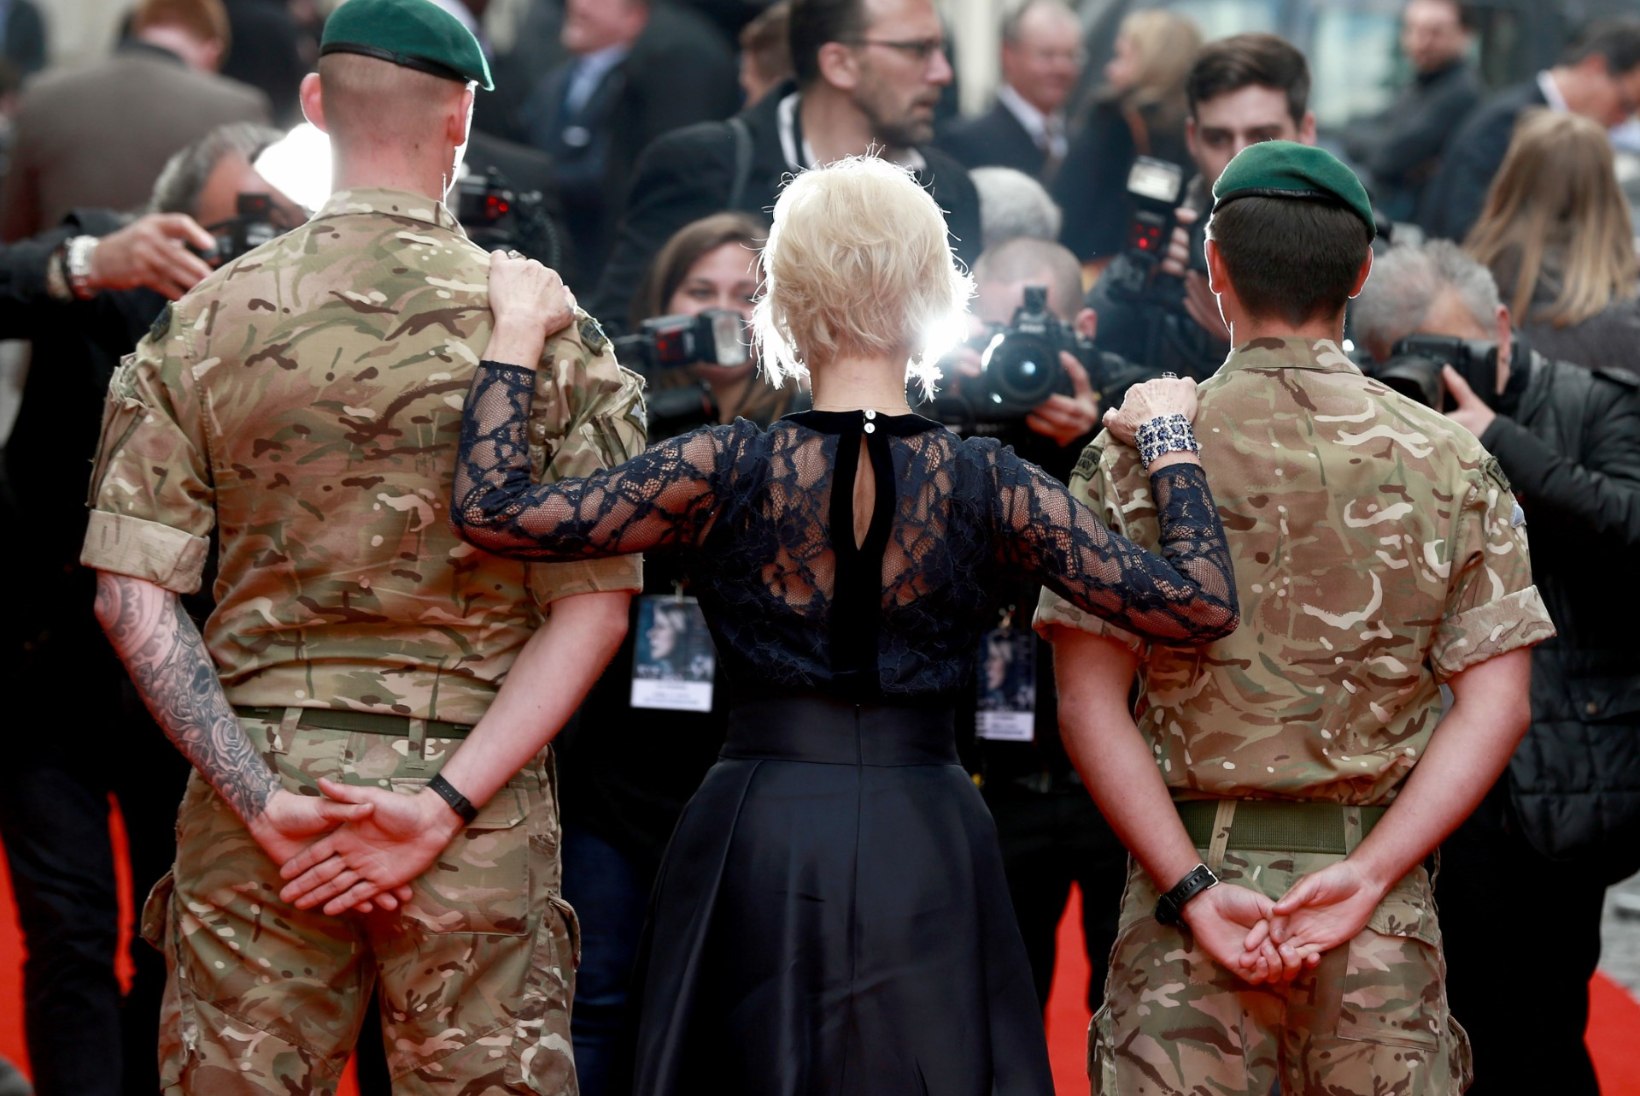 FOTOD | Särav Helen Mirren flirtis oma uue filmi esilinastusel sõduritega